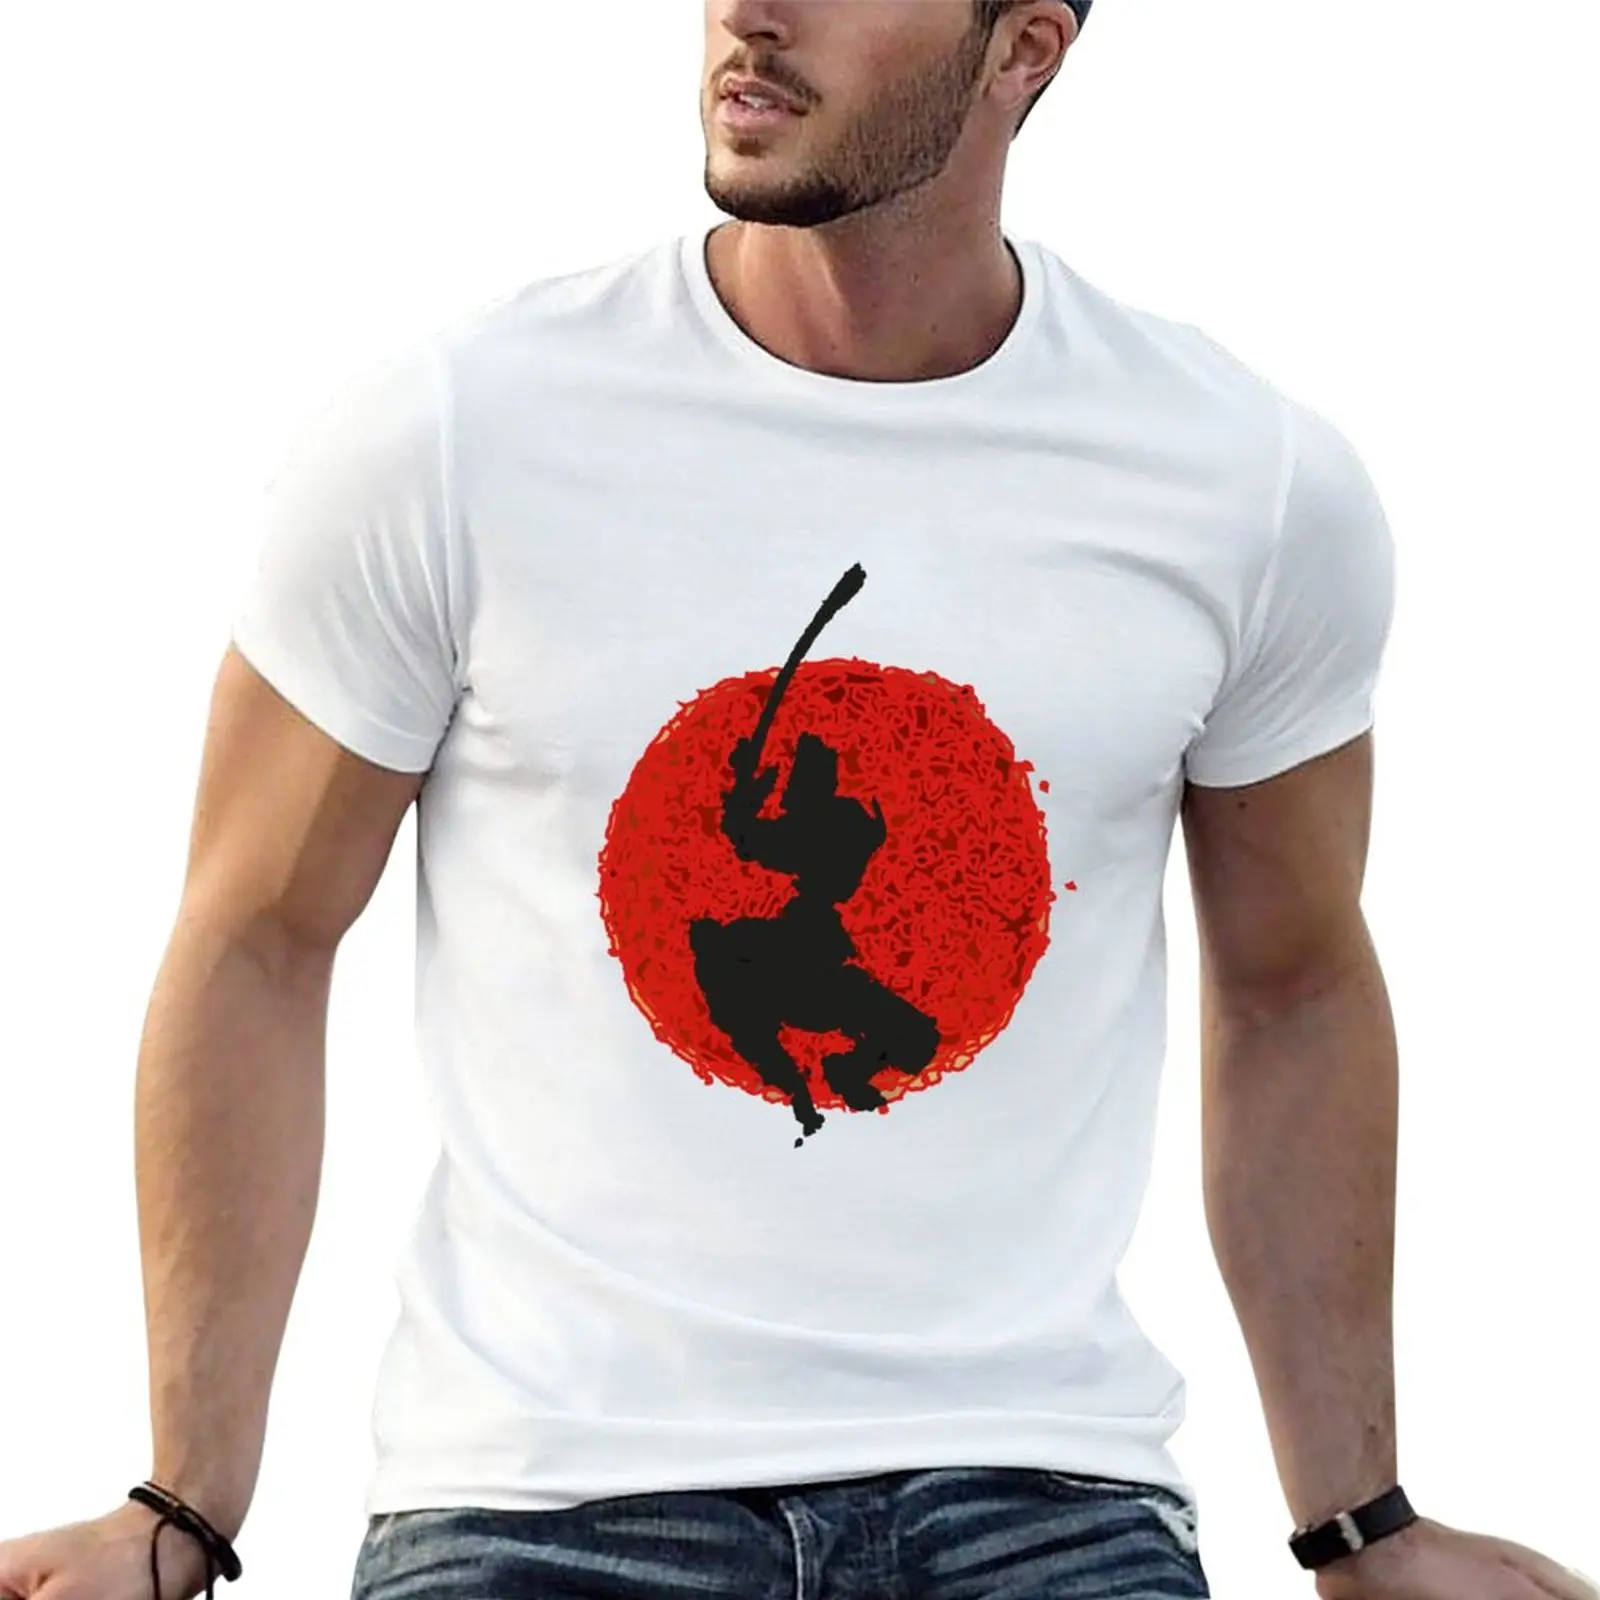 

Футболка с самураем аниме быстросохнущая футболка, графическая футболка, сделанная на заказ футболка с коротким рукавом, Мужская футболка